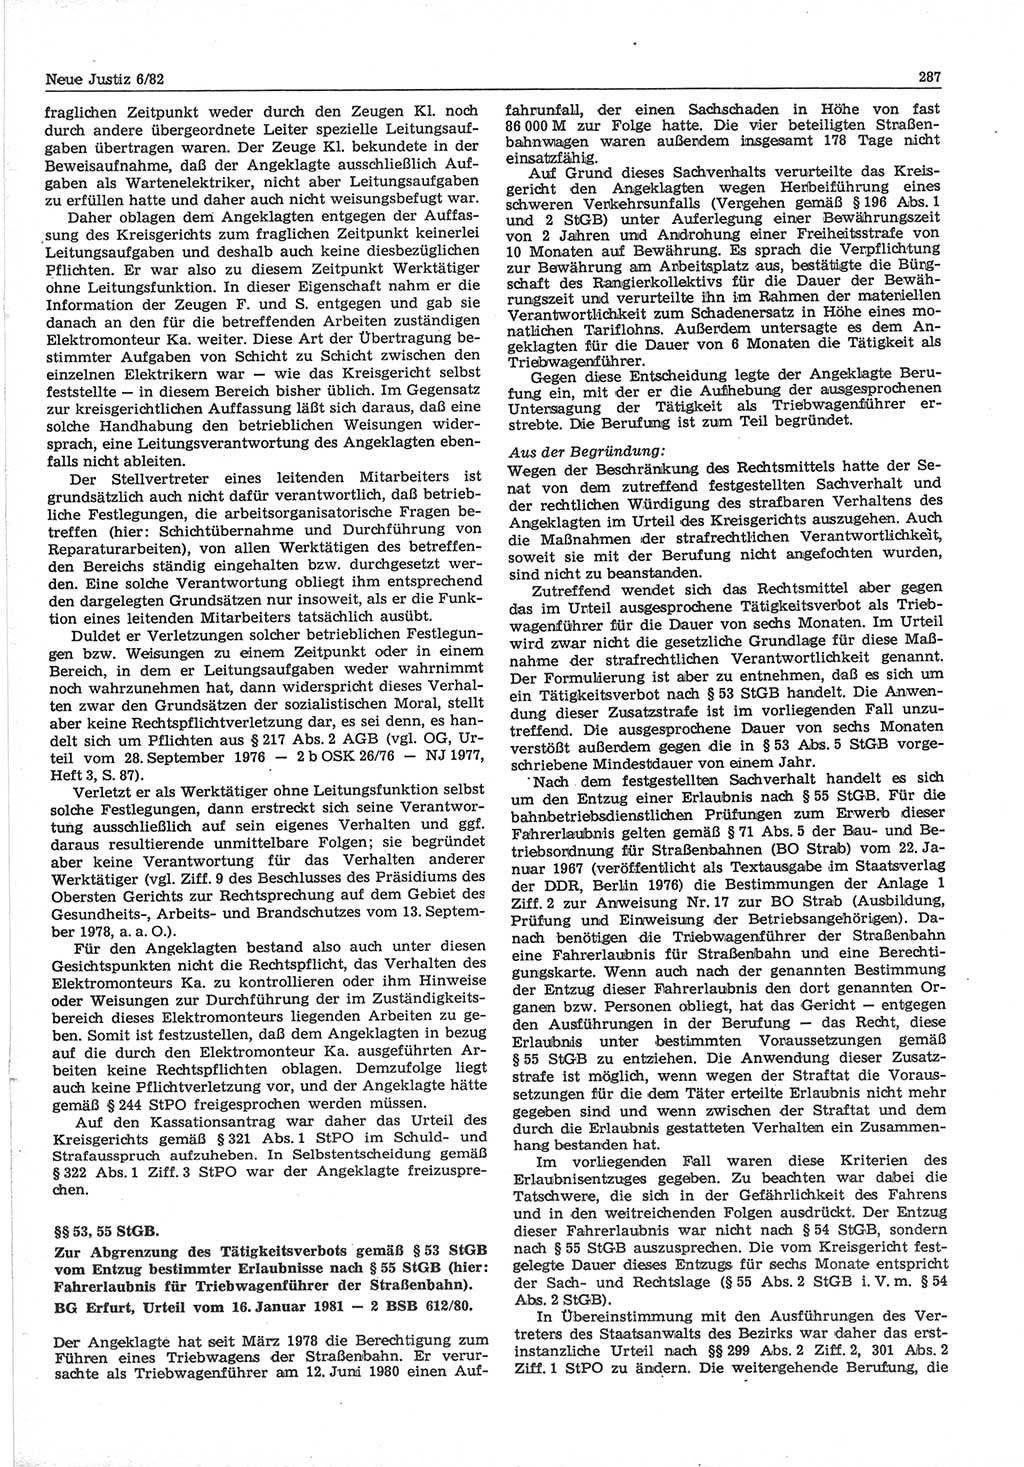 Neue Justiz (NJ), Zeitschrift für sozialistisches Recht und Gesetzlichkeit [Deutsche Demokratische Republik (DDR)], 36. Jahrgang 1982, Seite 287 (NJ DDR 1982, S. 287)